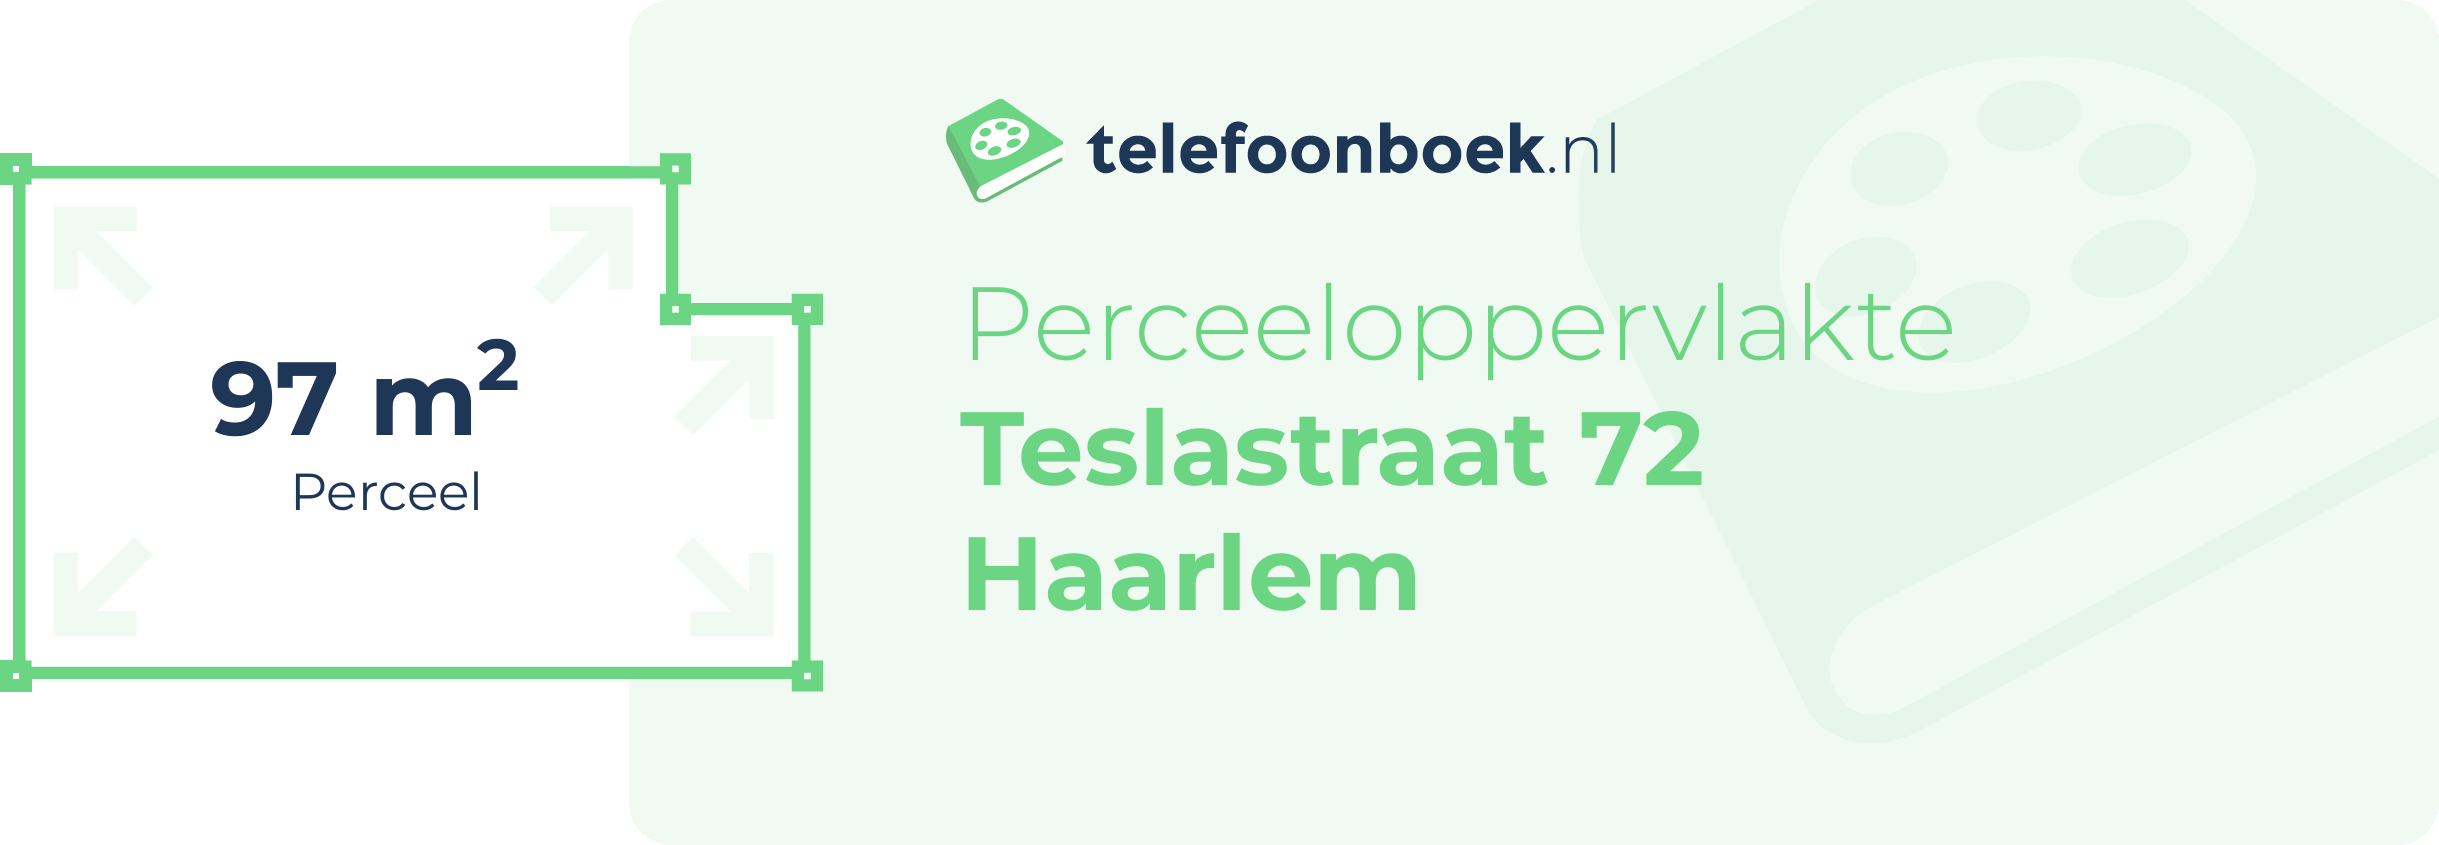 Perceeloppervlakte Teslastraat 72 Haarlem